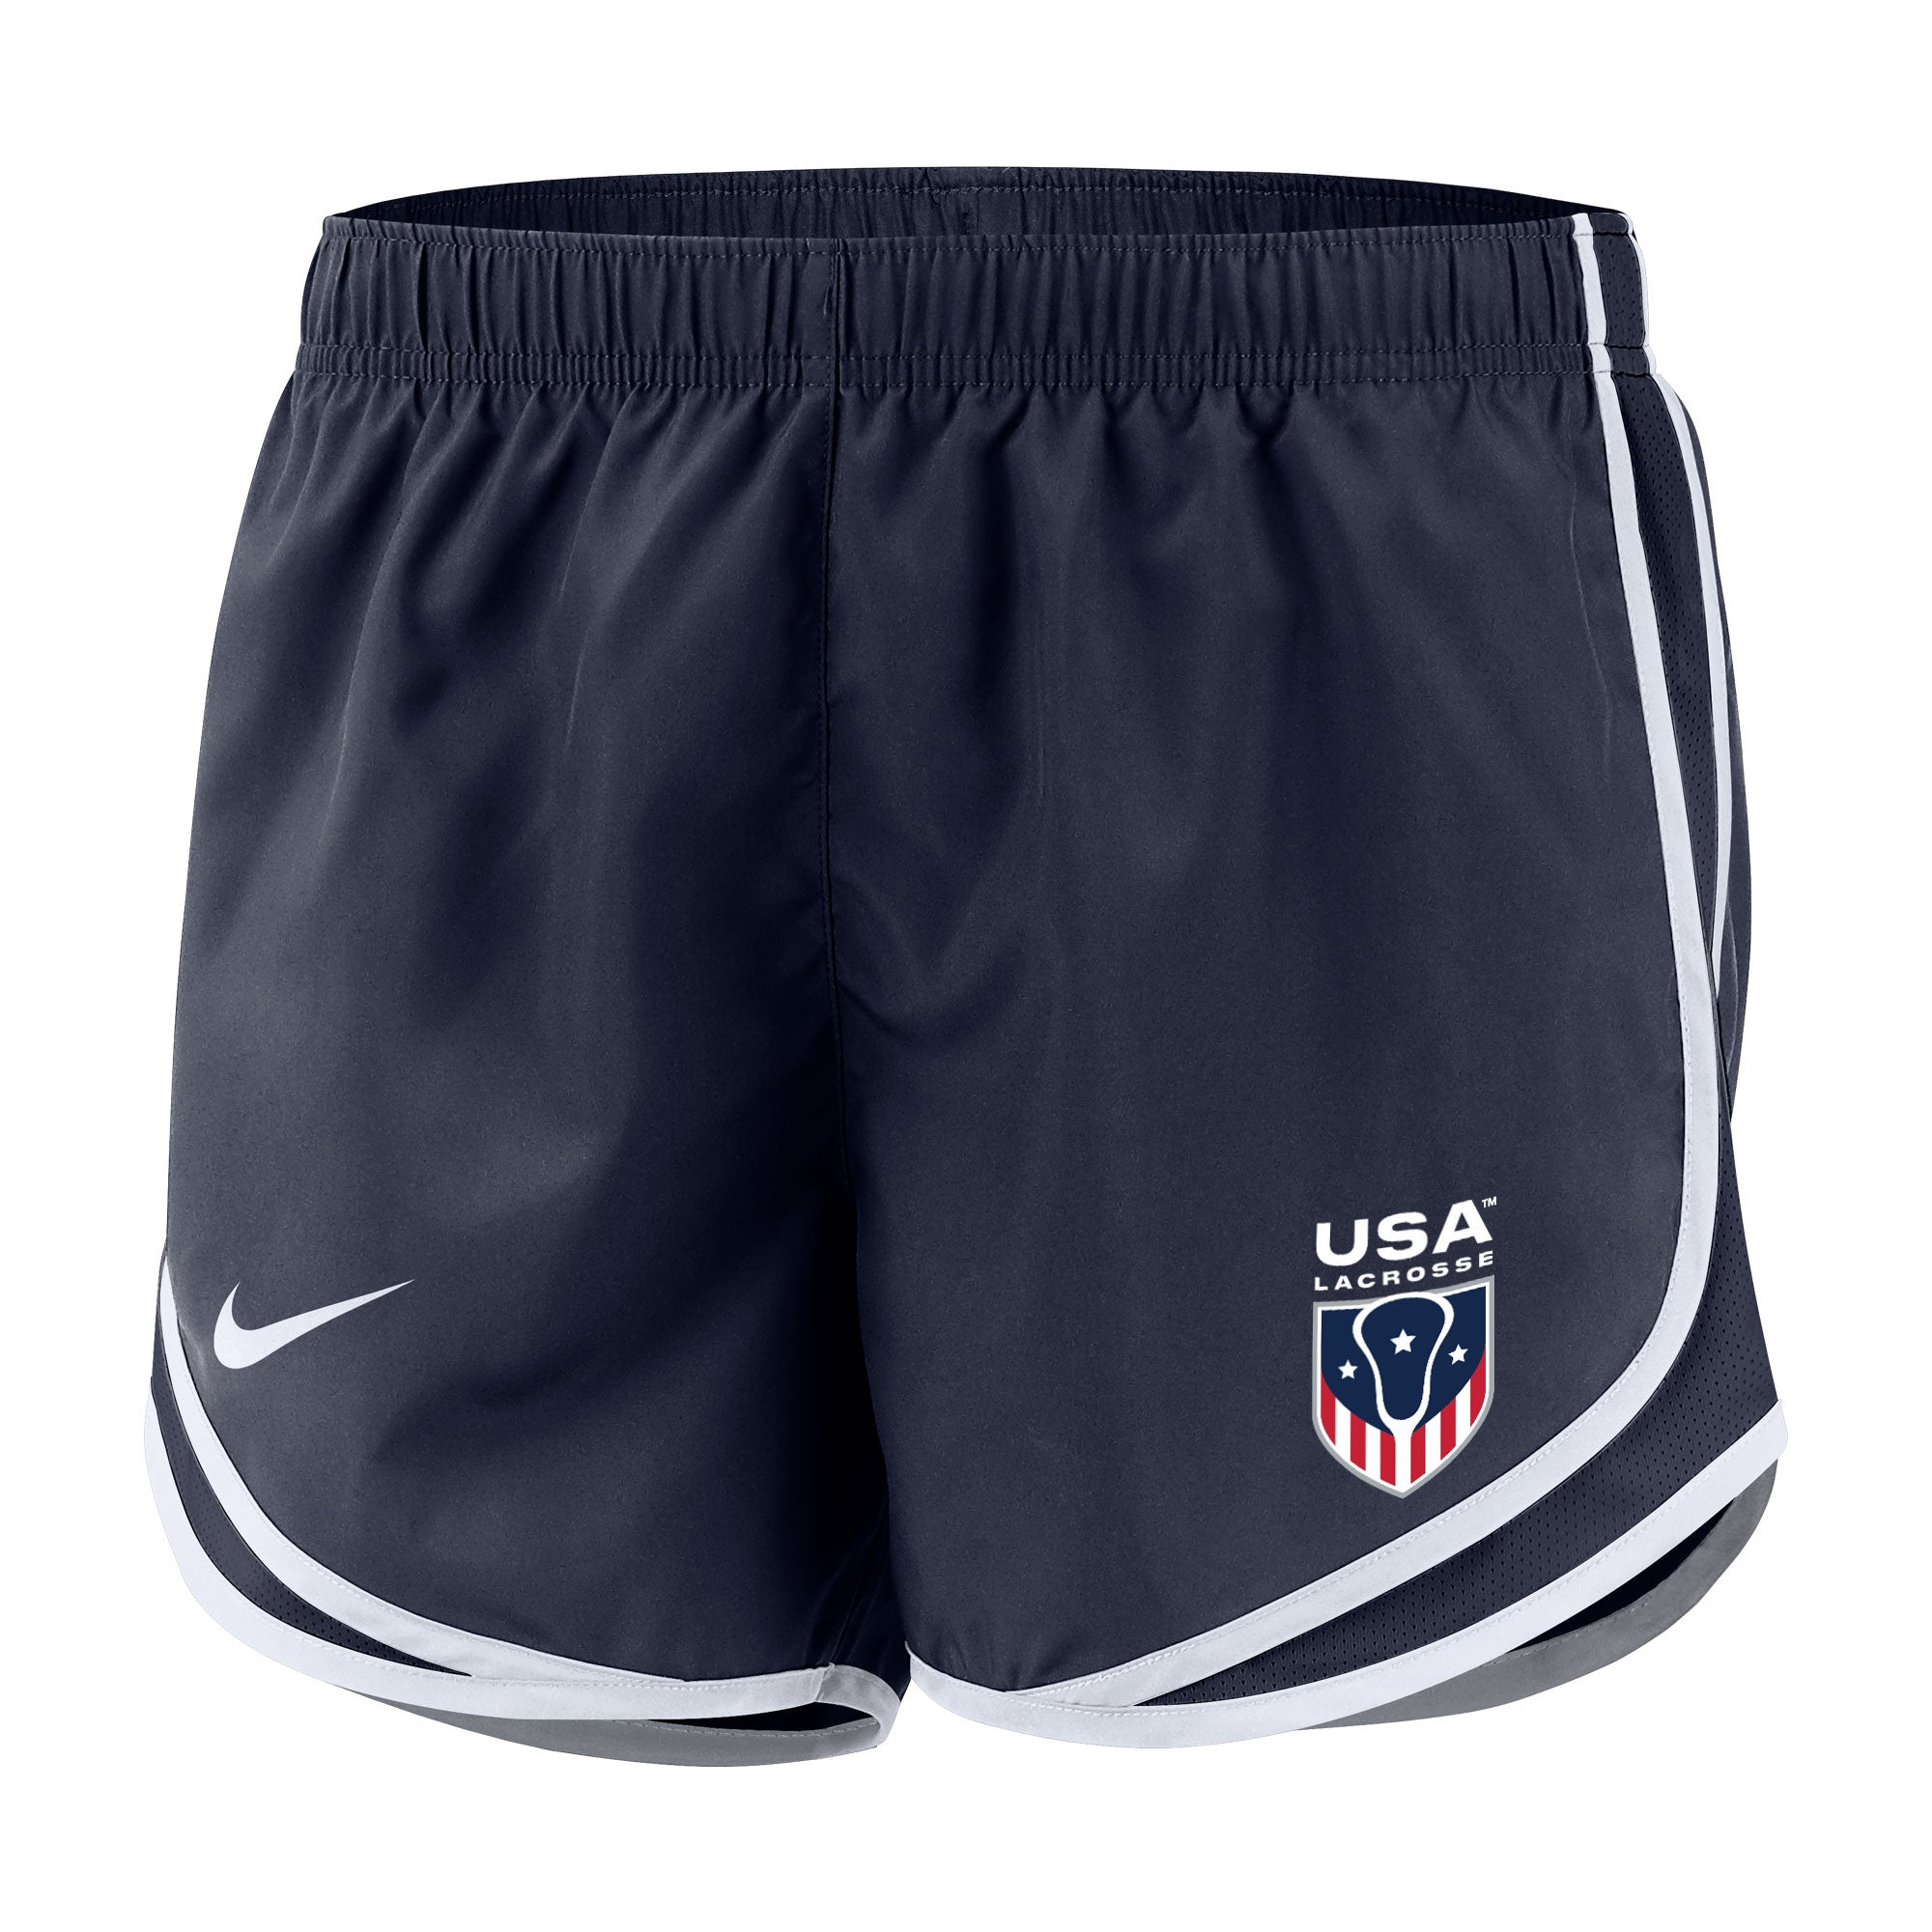 Women's USA Lacrosse Nike Tempo Shorts